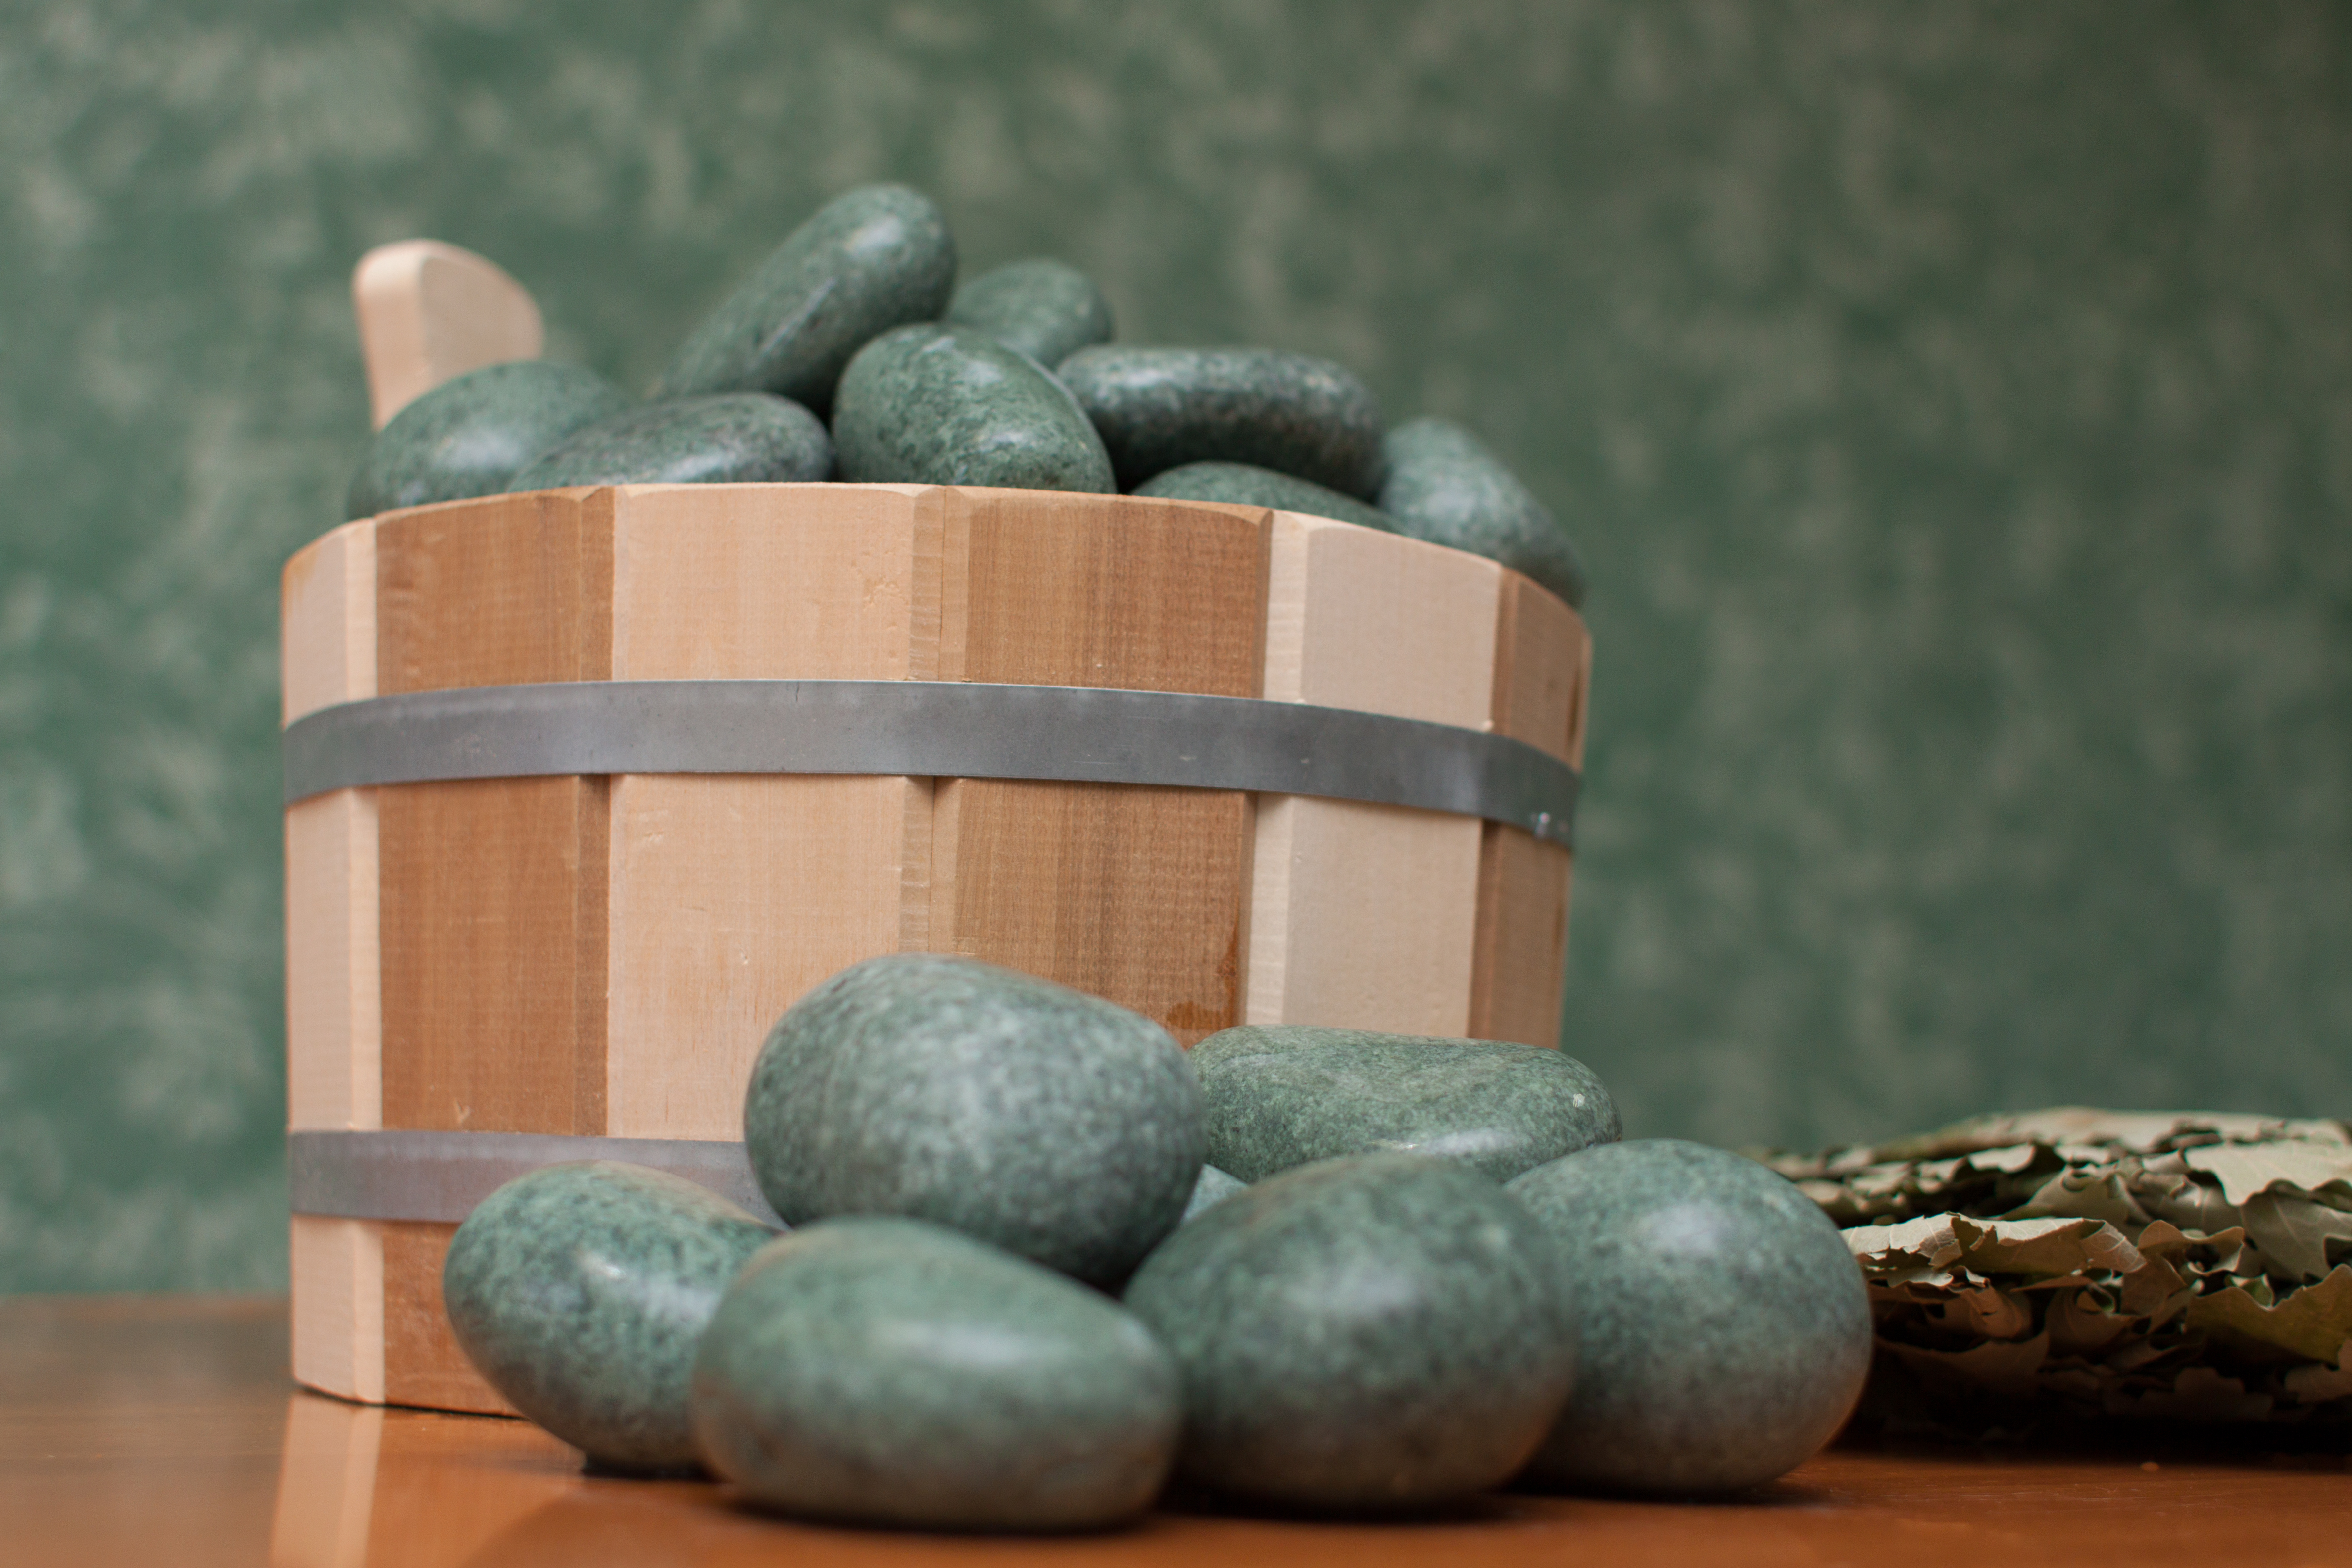 Камни для бани - какие лучше выбрать для парилки по свойствам, размерам и стоимости